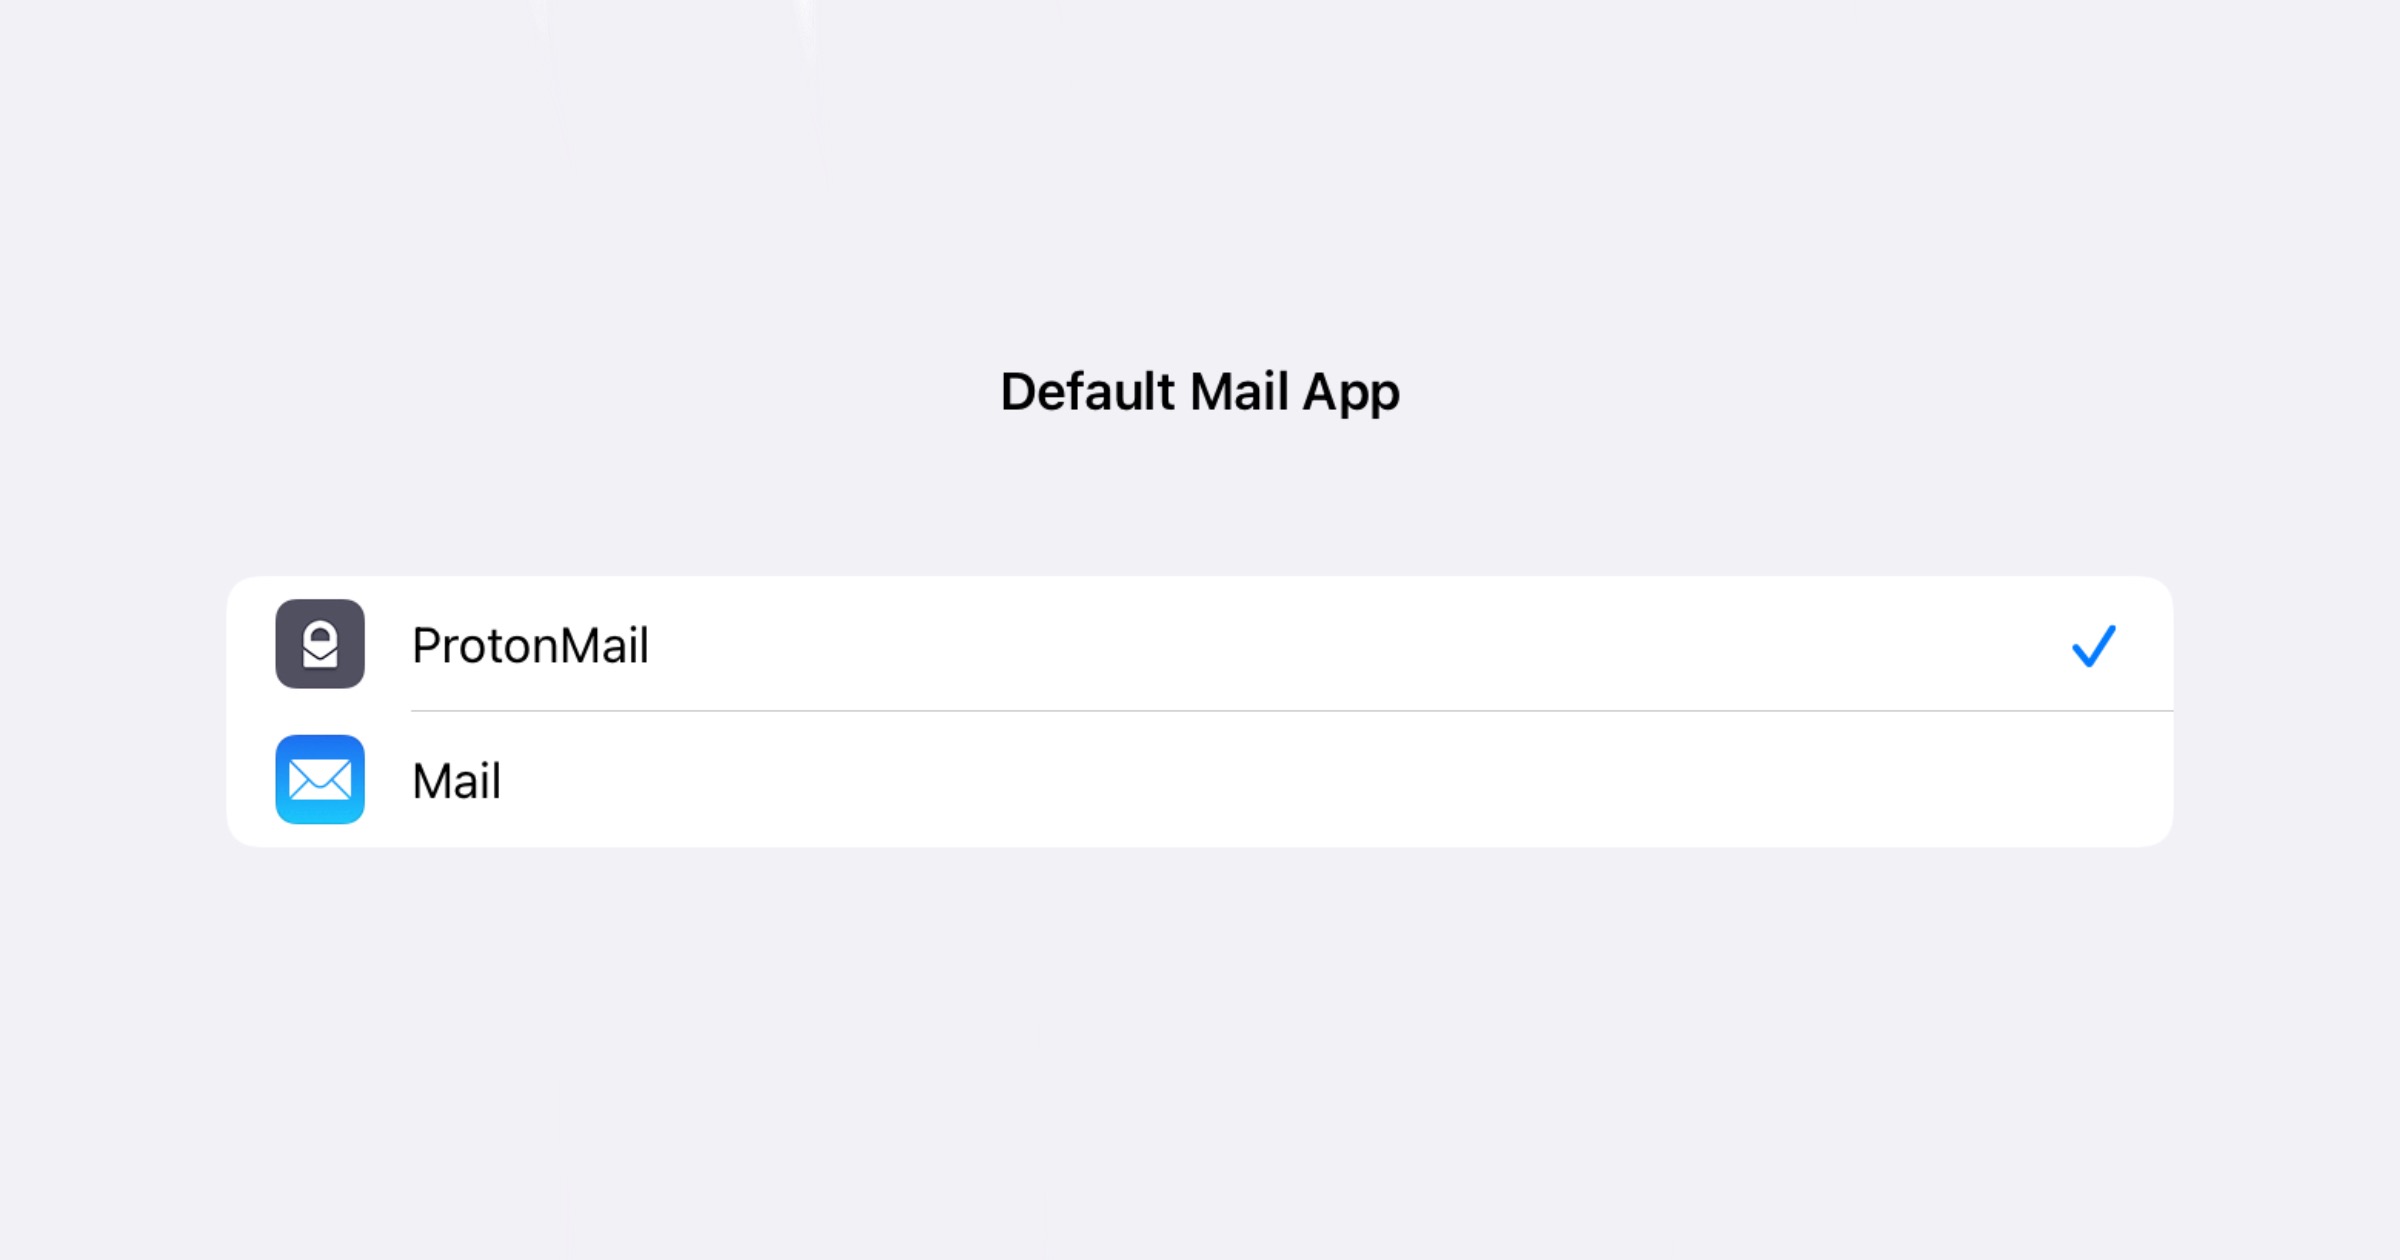 La actualización le permite configurar ProtonMail como su aplicación de correo electrónico predeterminada